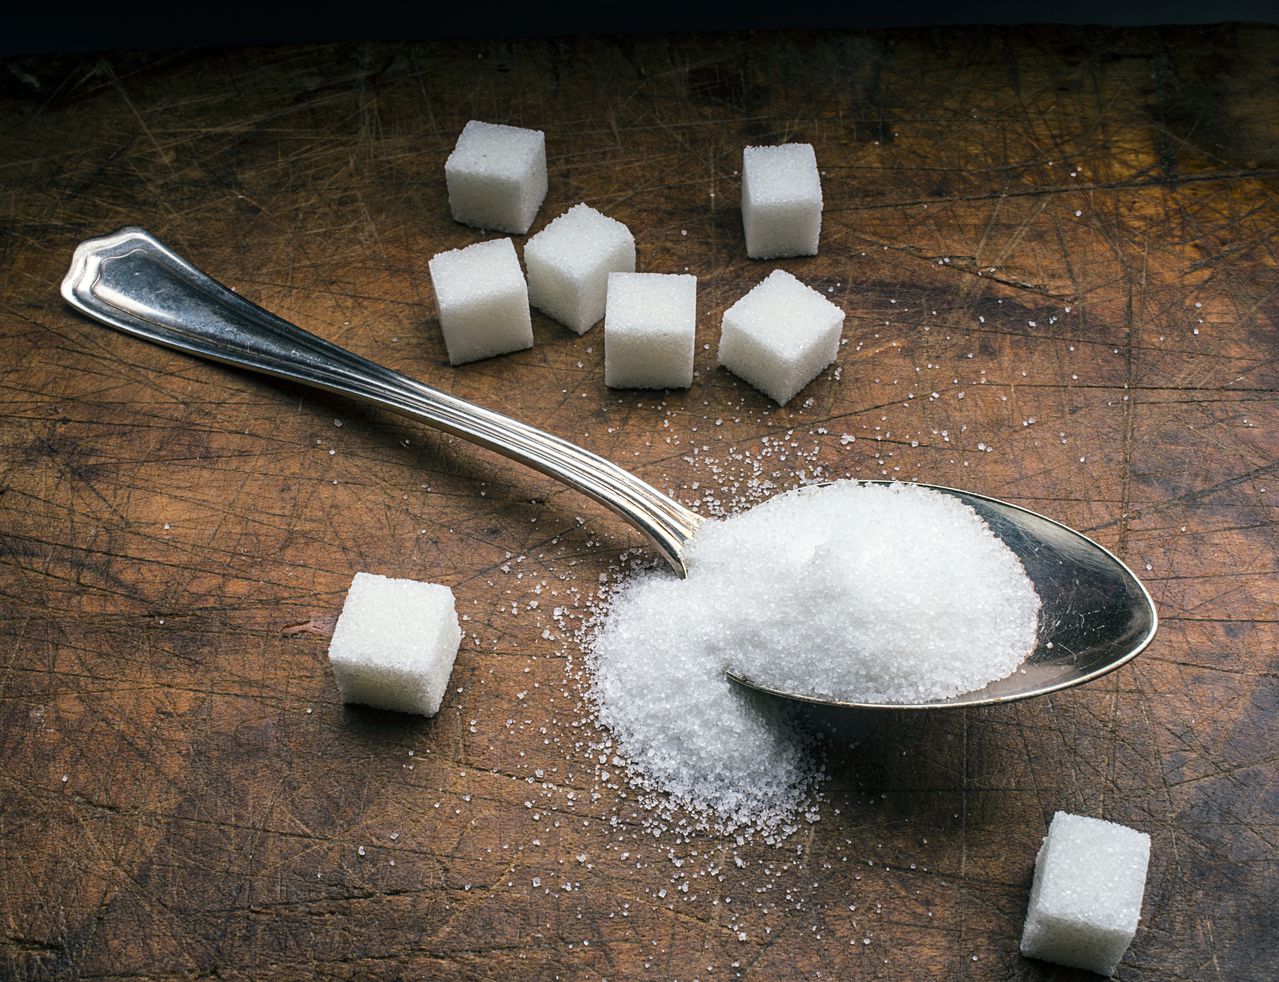 El azúcar en exceso termina afectando varios sistemas del organismo. Foto: Getty Images.